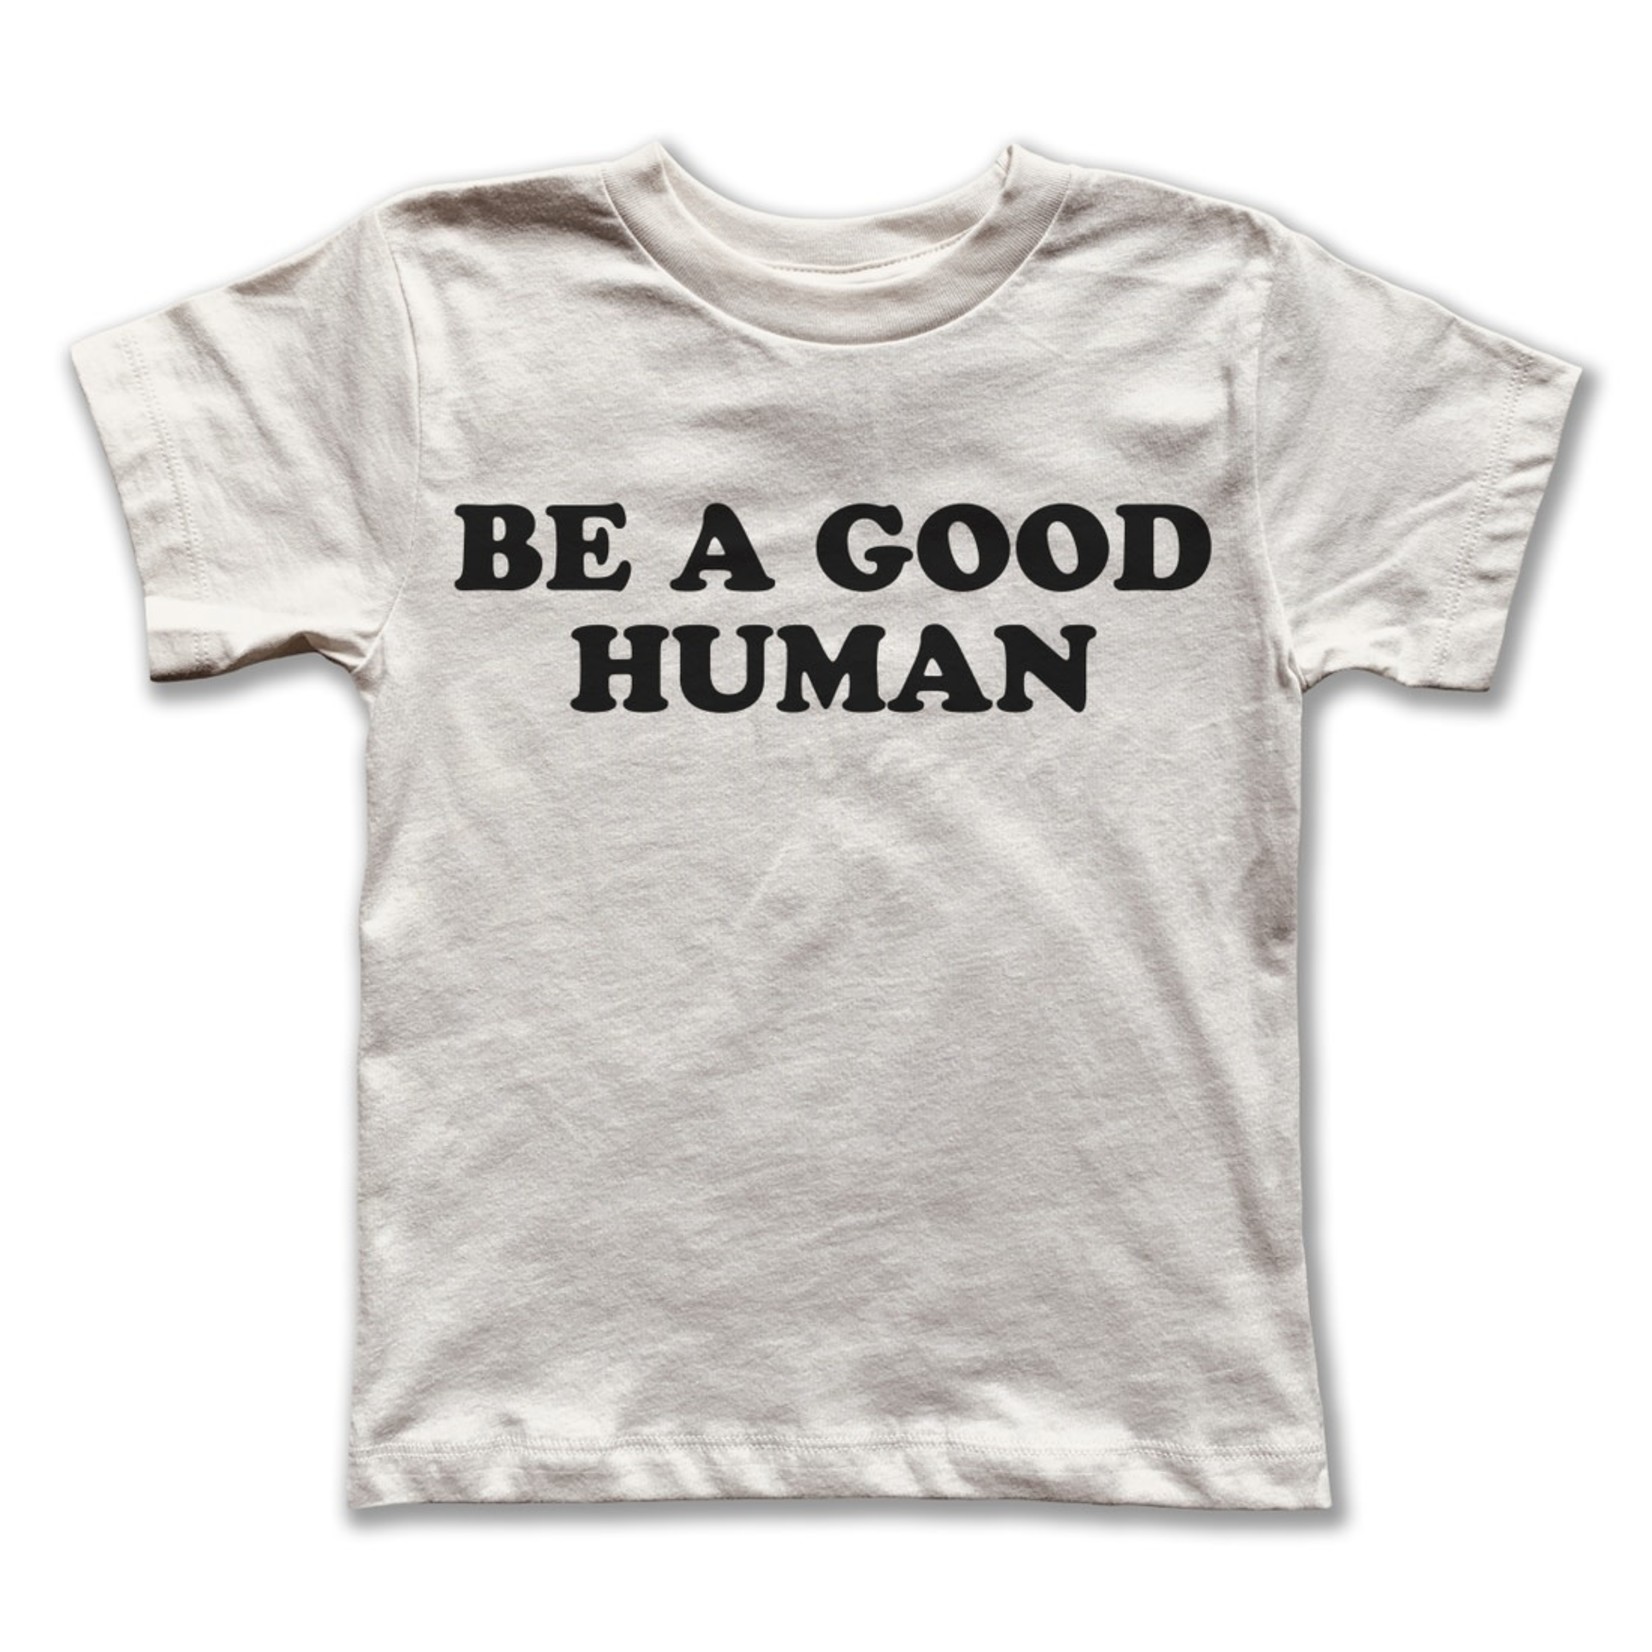 rivet apparel co. be a good human